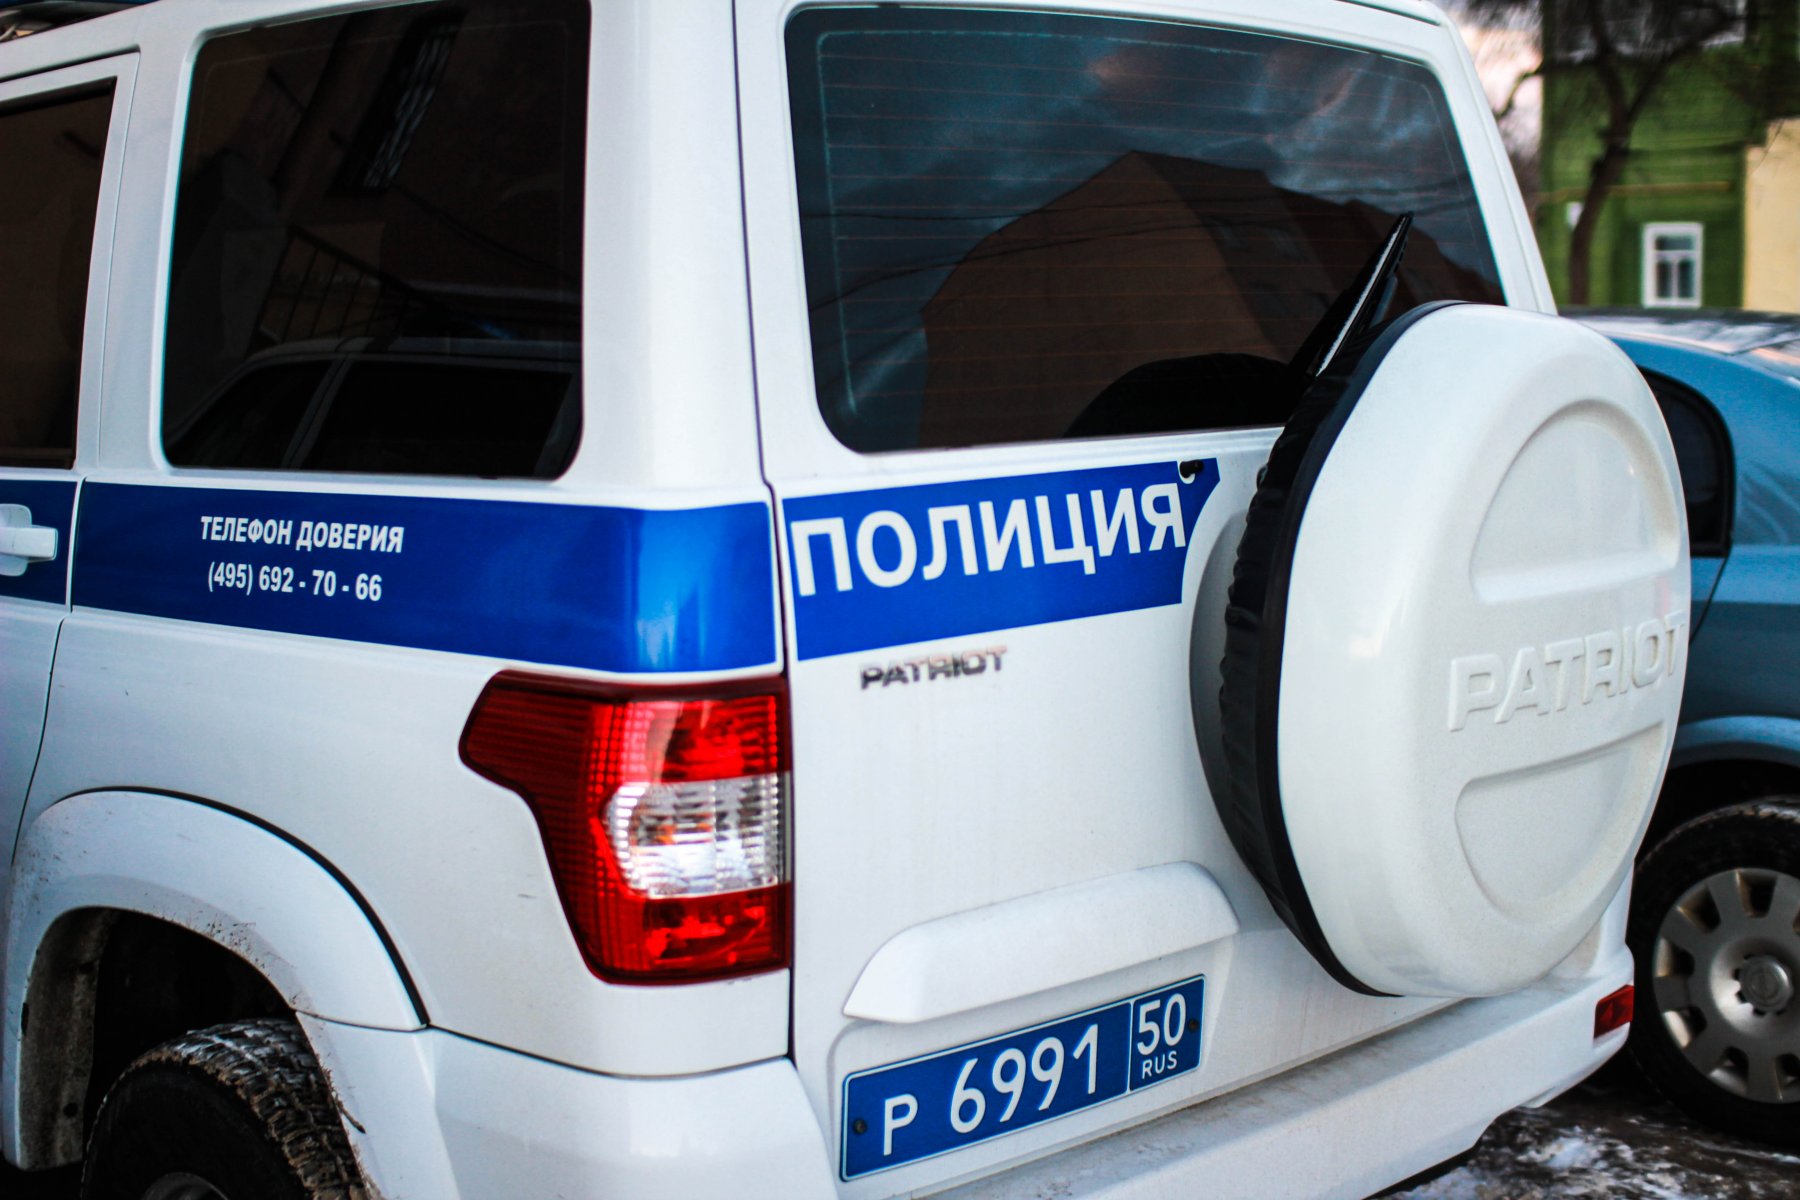 ГИБДД Подмосковья задержала подозреваемого в угоне автомобиля «Нива»